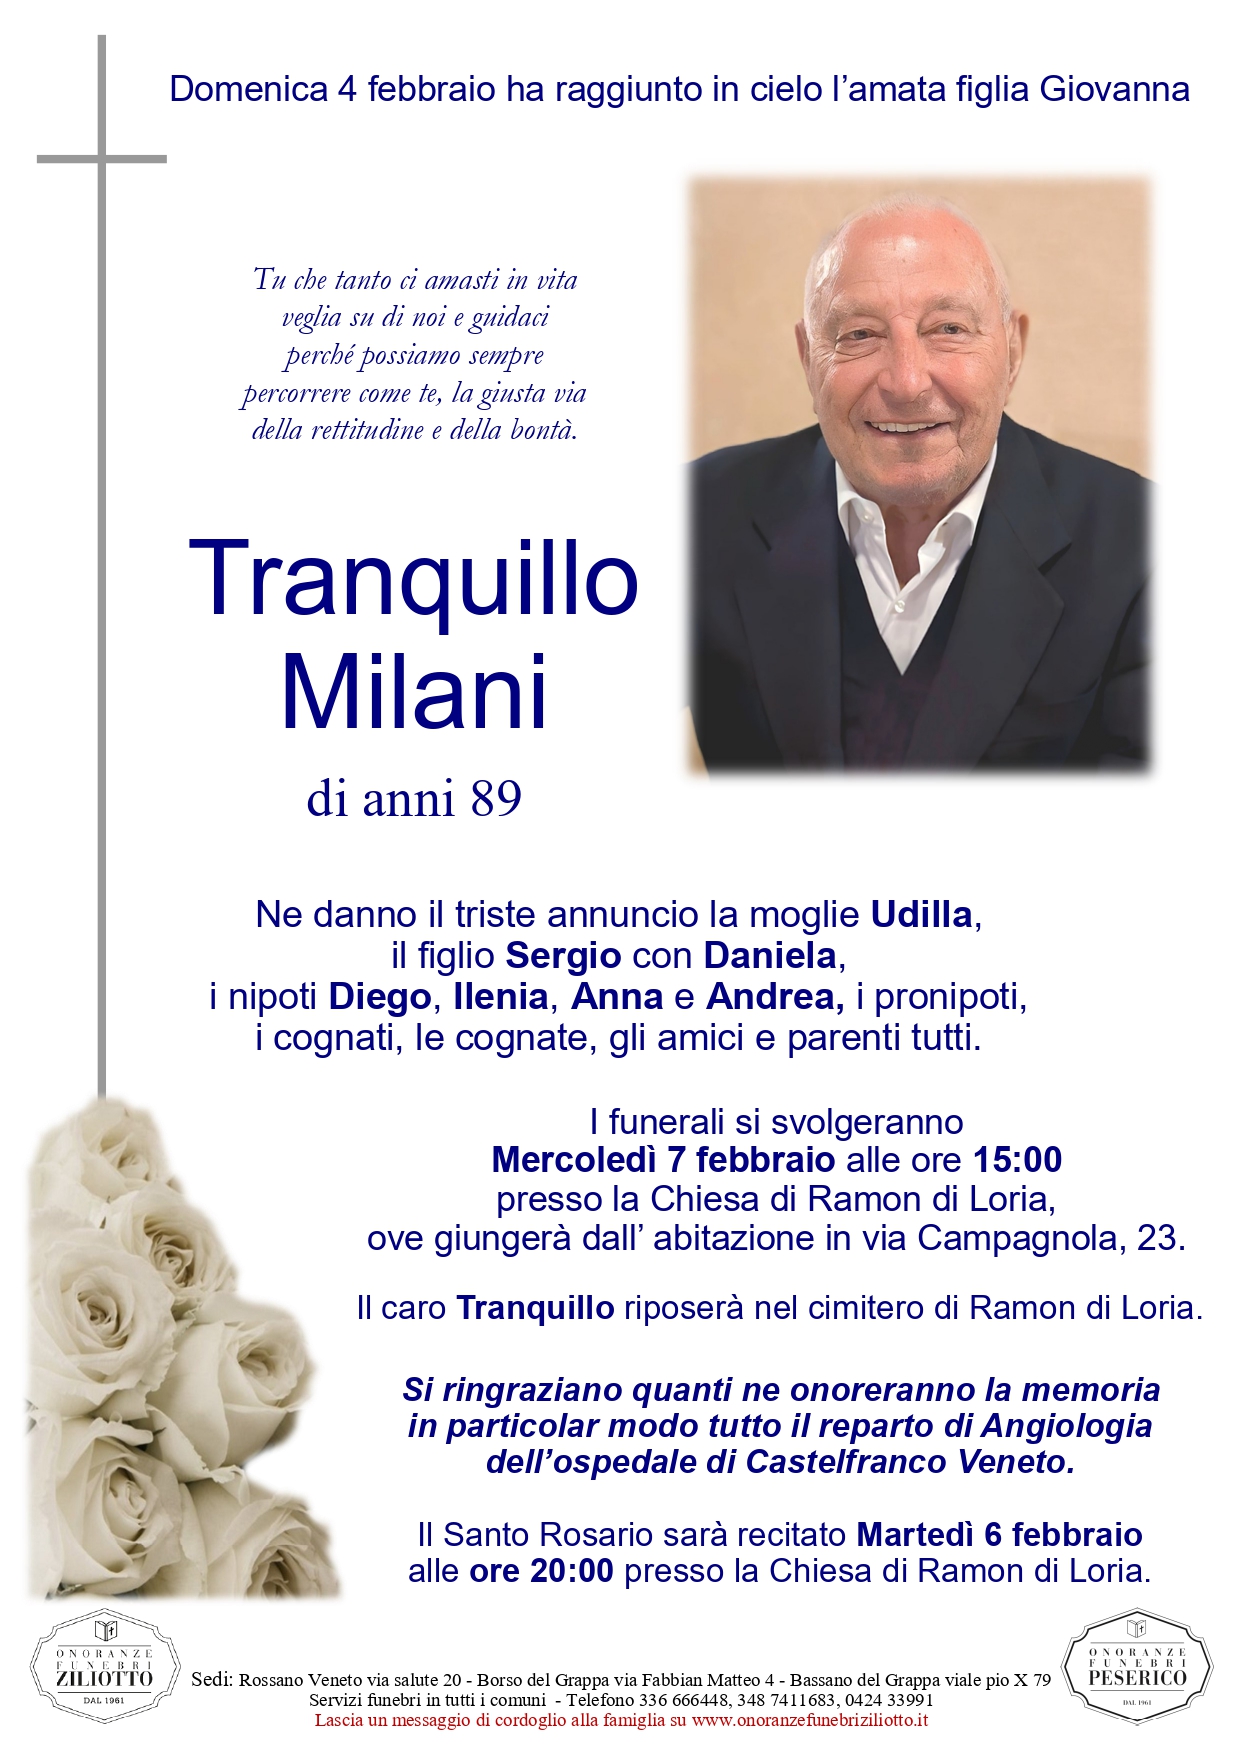 Tranquillo Milani - 89 anni - Ramon di Loria